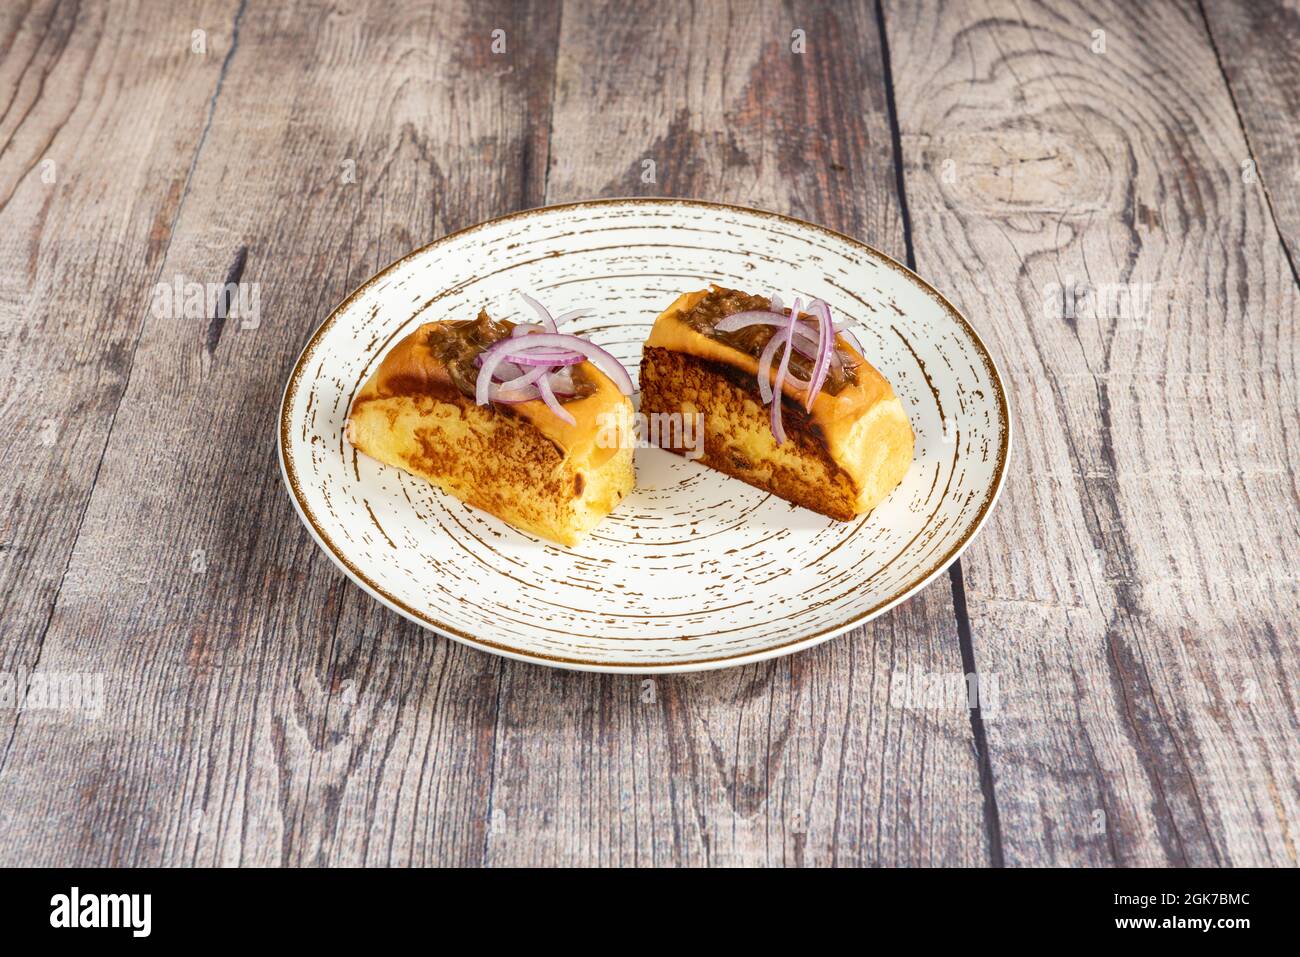 Geröstetes Brioche-Brot, gefüllt mit Schweinefleisch im spanischen Stil und darauf kleine Stücke lila Zwiebel auf einem weißen Teller Stockfoto